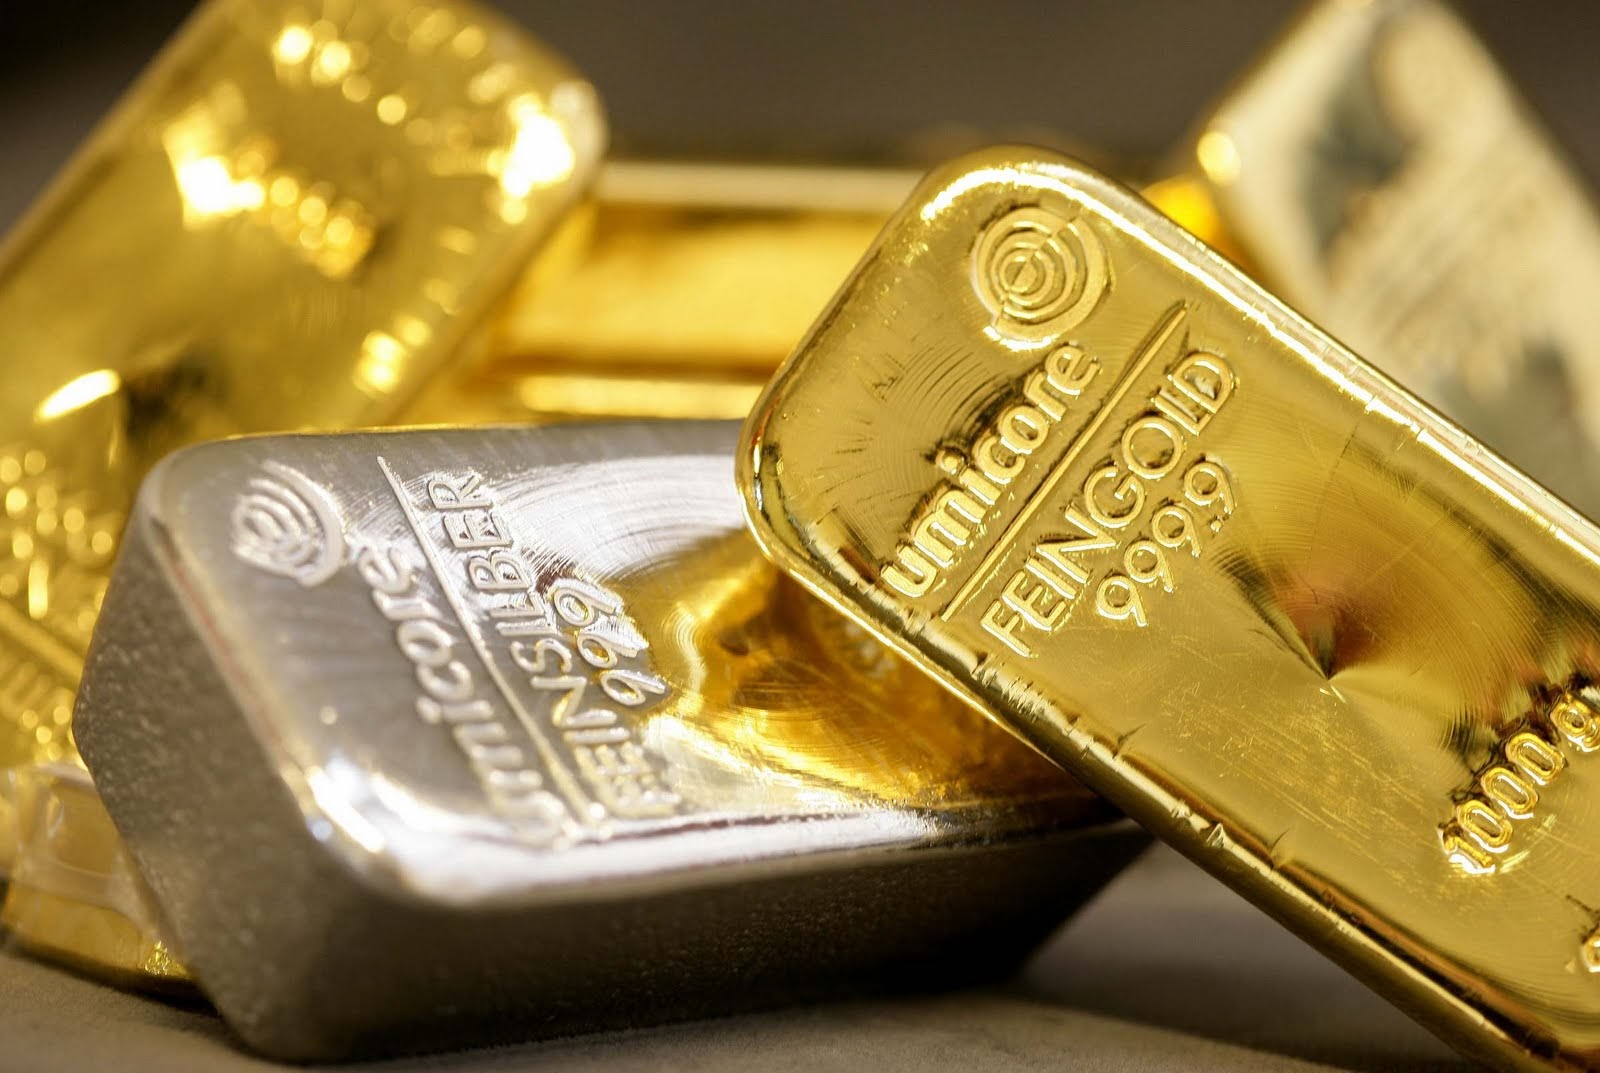  Вложение денег в драгоценные металлы - надежный, но долгосрочный способ инвестировать 10 000 рублей